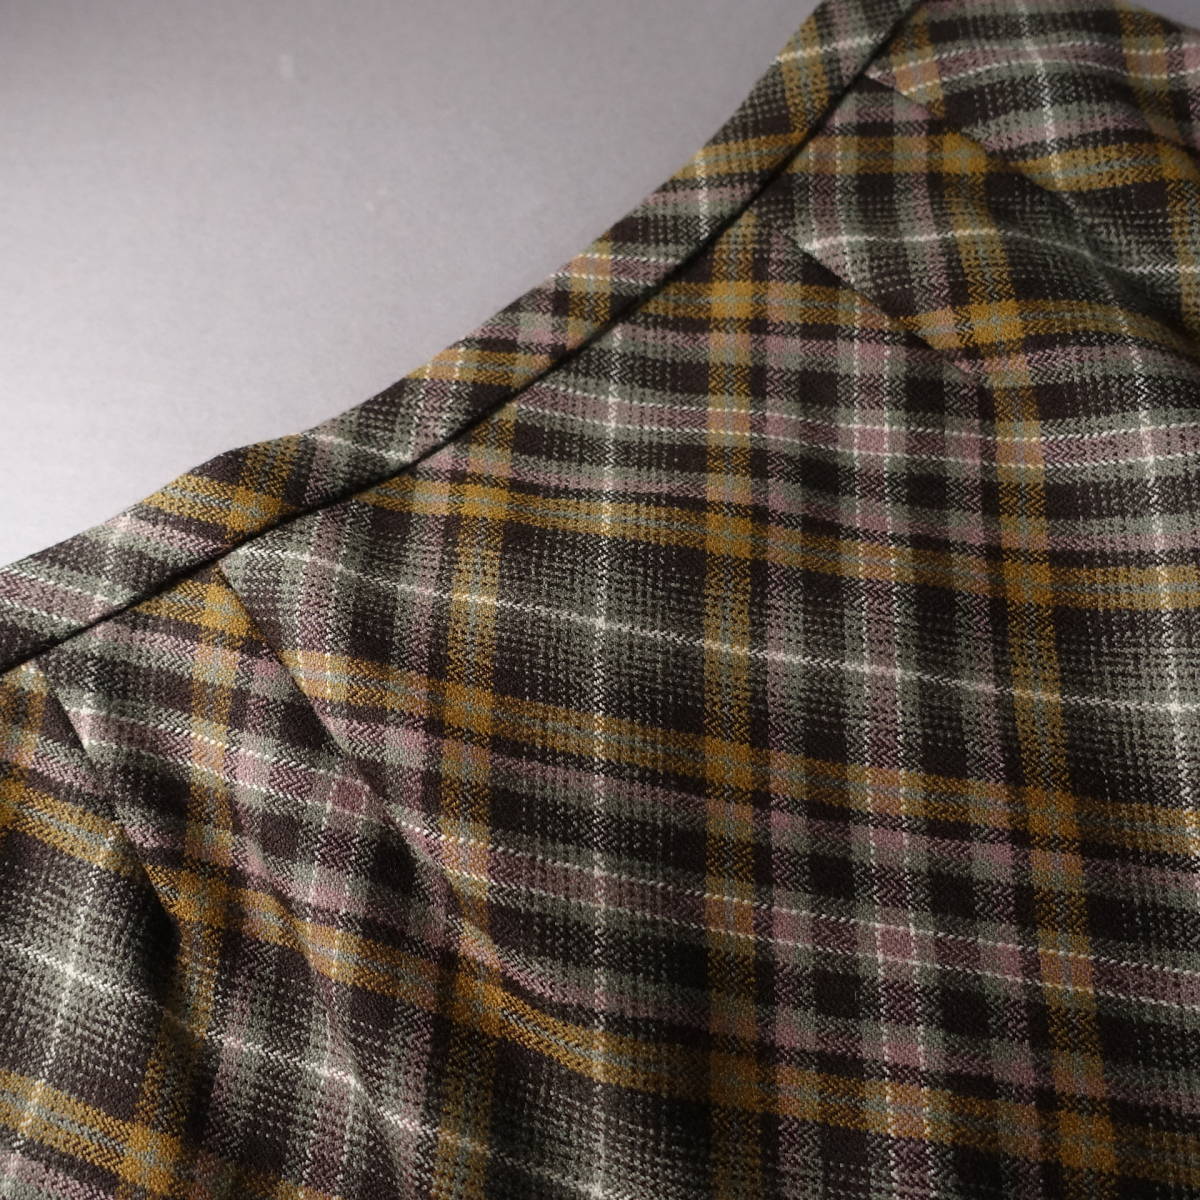  beautiful goods *Leilian/ Leilian / jacket 11/ skirt 13/ made in Japan / ecse -n/ wool 100% setup / beige × Brown / jacket / skirt 